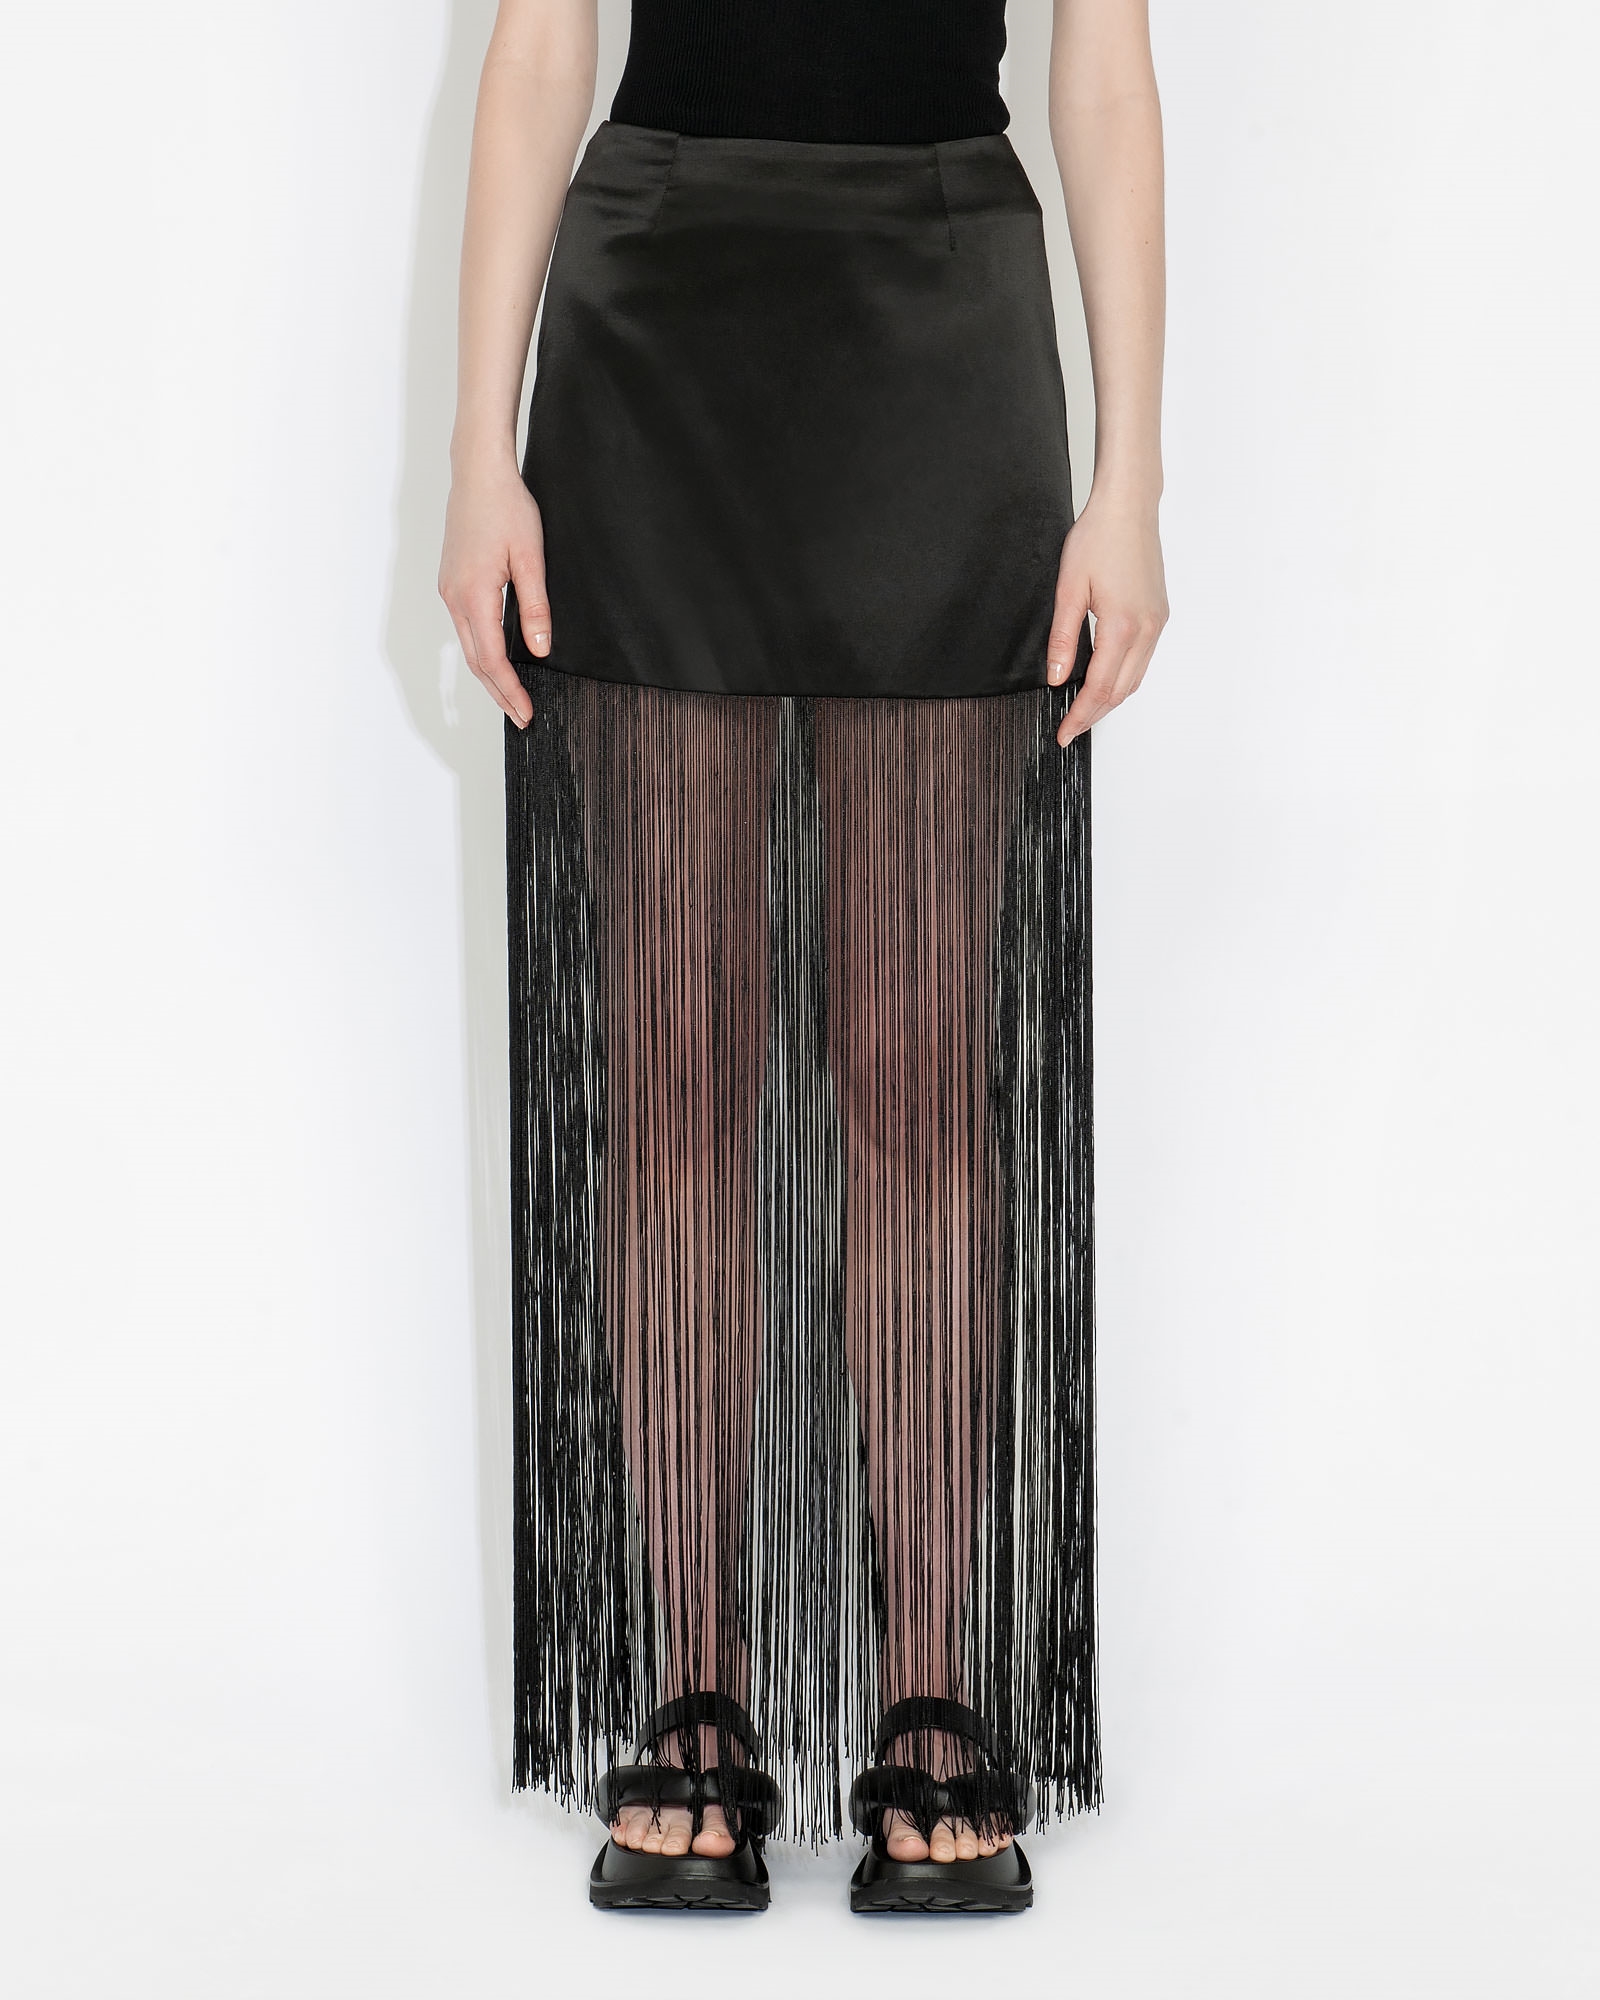 Skirts | Satin Fringe Skirt | 990 Black